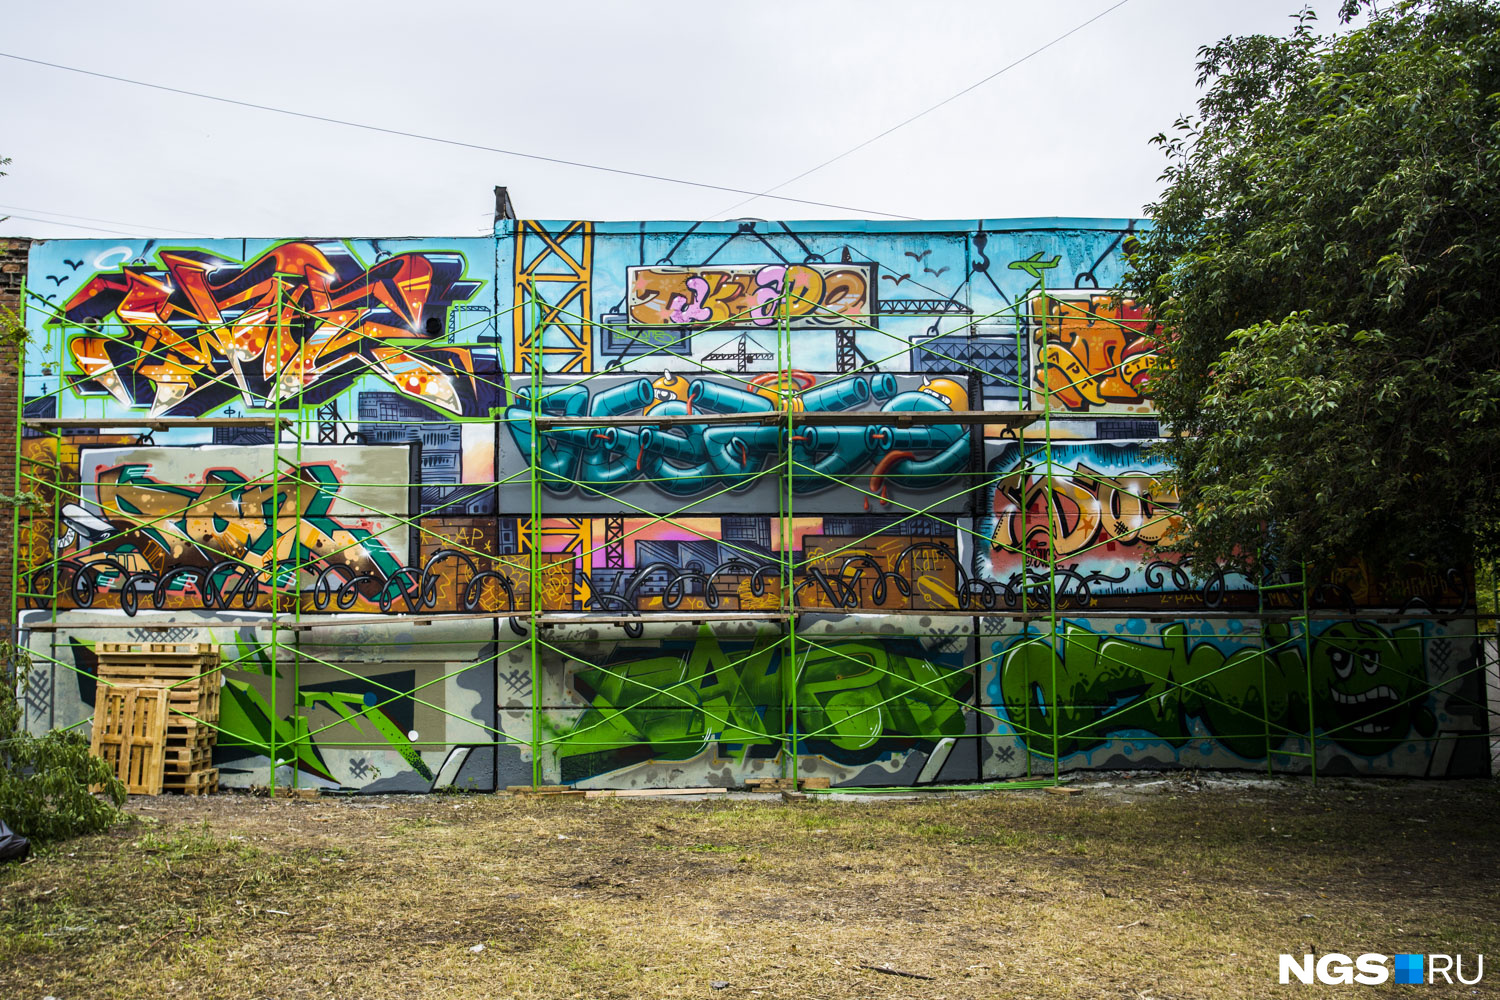 Название этой работы StreetArtStroy (граффити-стройка). Над ней работали художники из Германии 